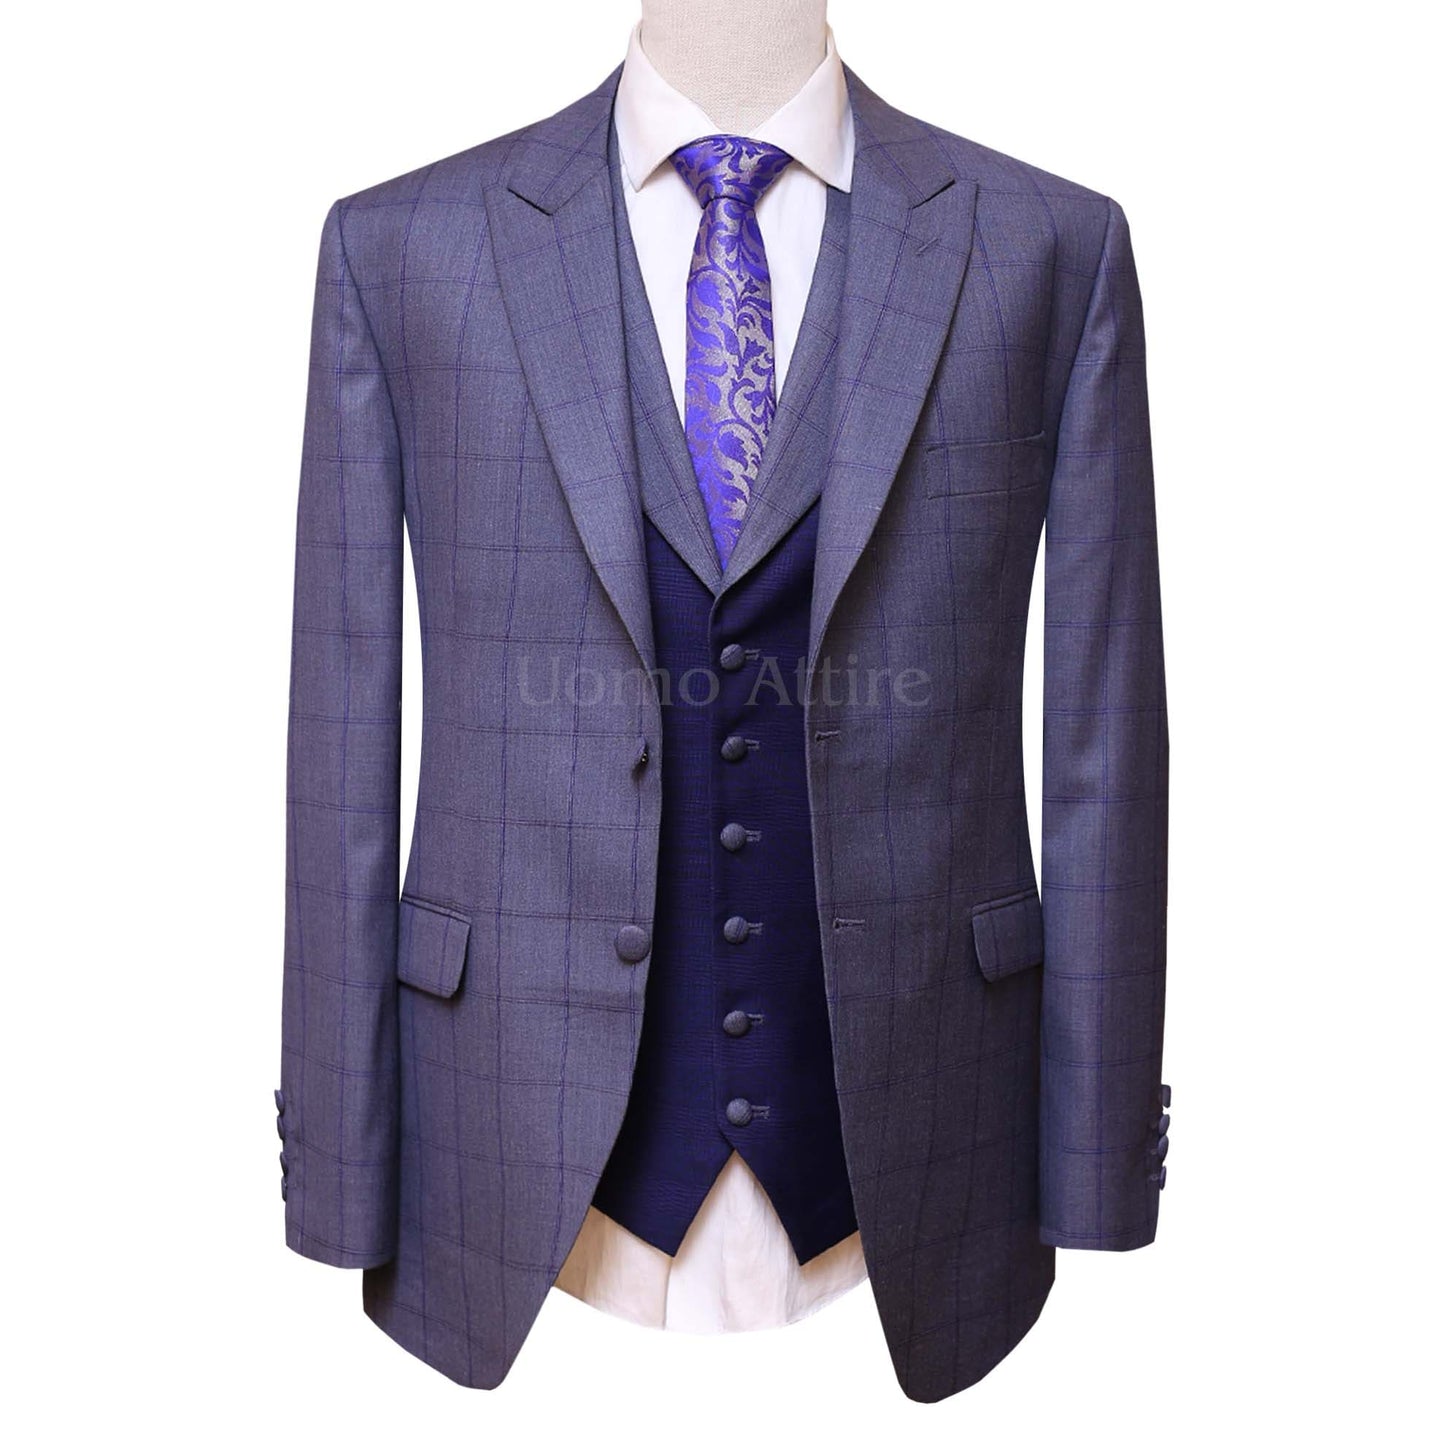 
                  
                    Windowpane Checkered Bespoke Gray 3 Piece Suit
                  
                